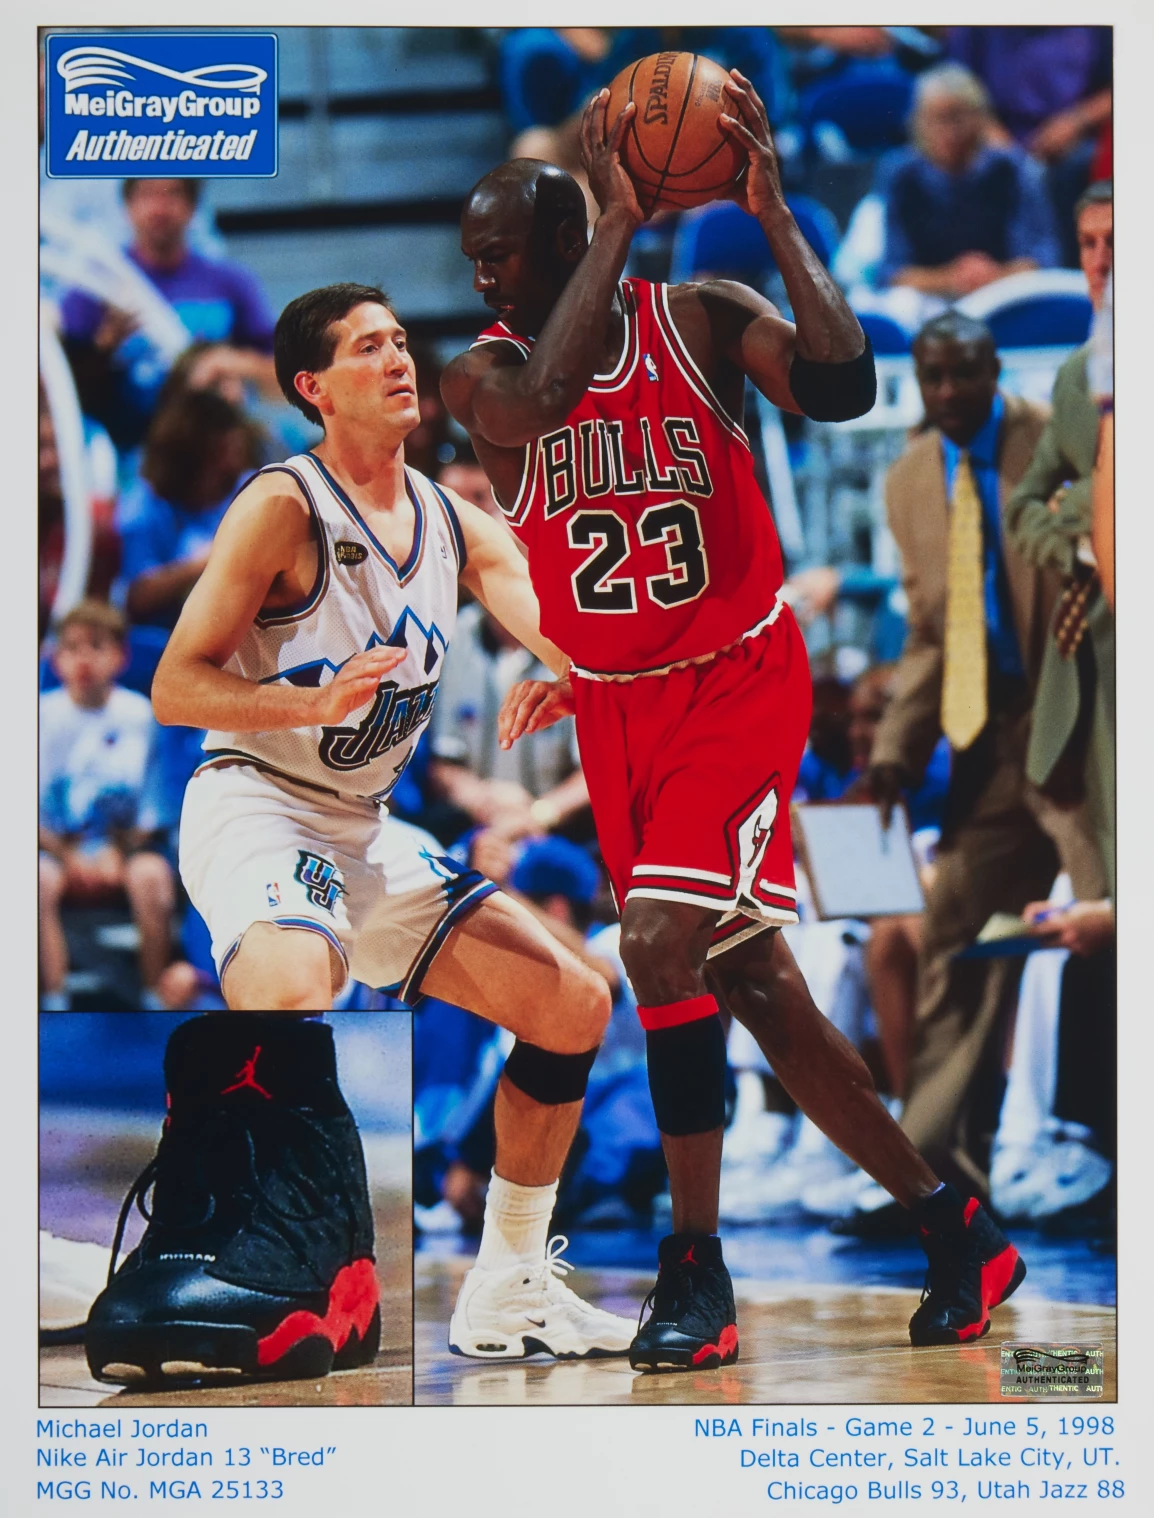 Michael Jordan's 1998 NBA Finals jersey sells for record $10.1M